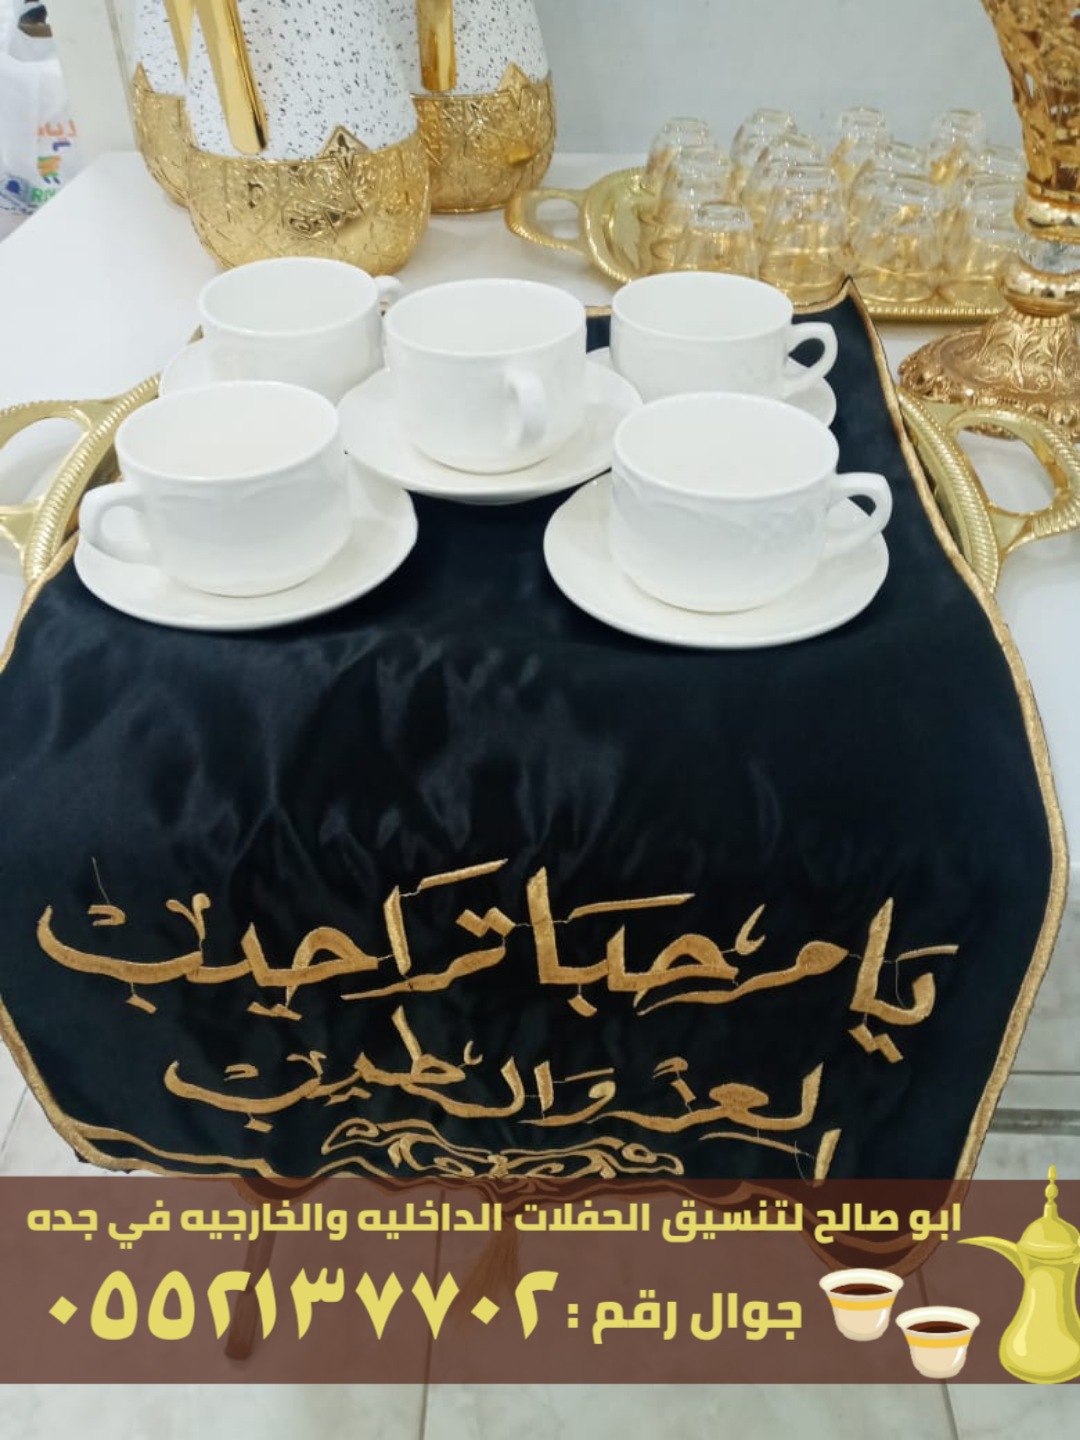 مباشرين قهوة و صبابين في جدة, 0552137702 P_2579l4bk81